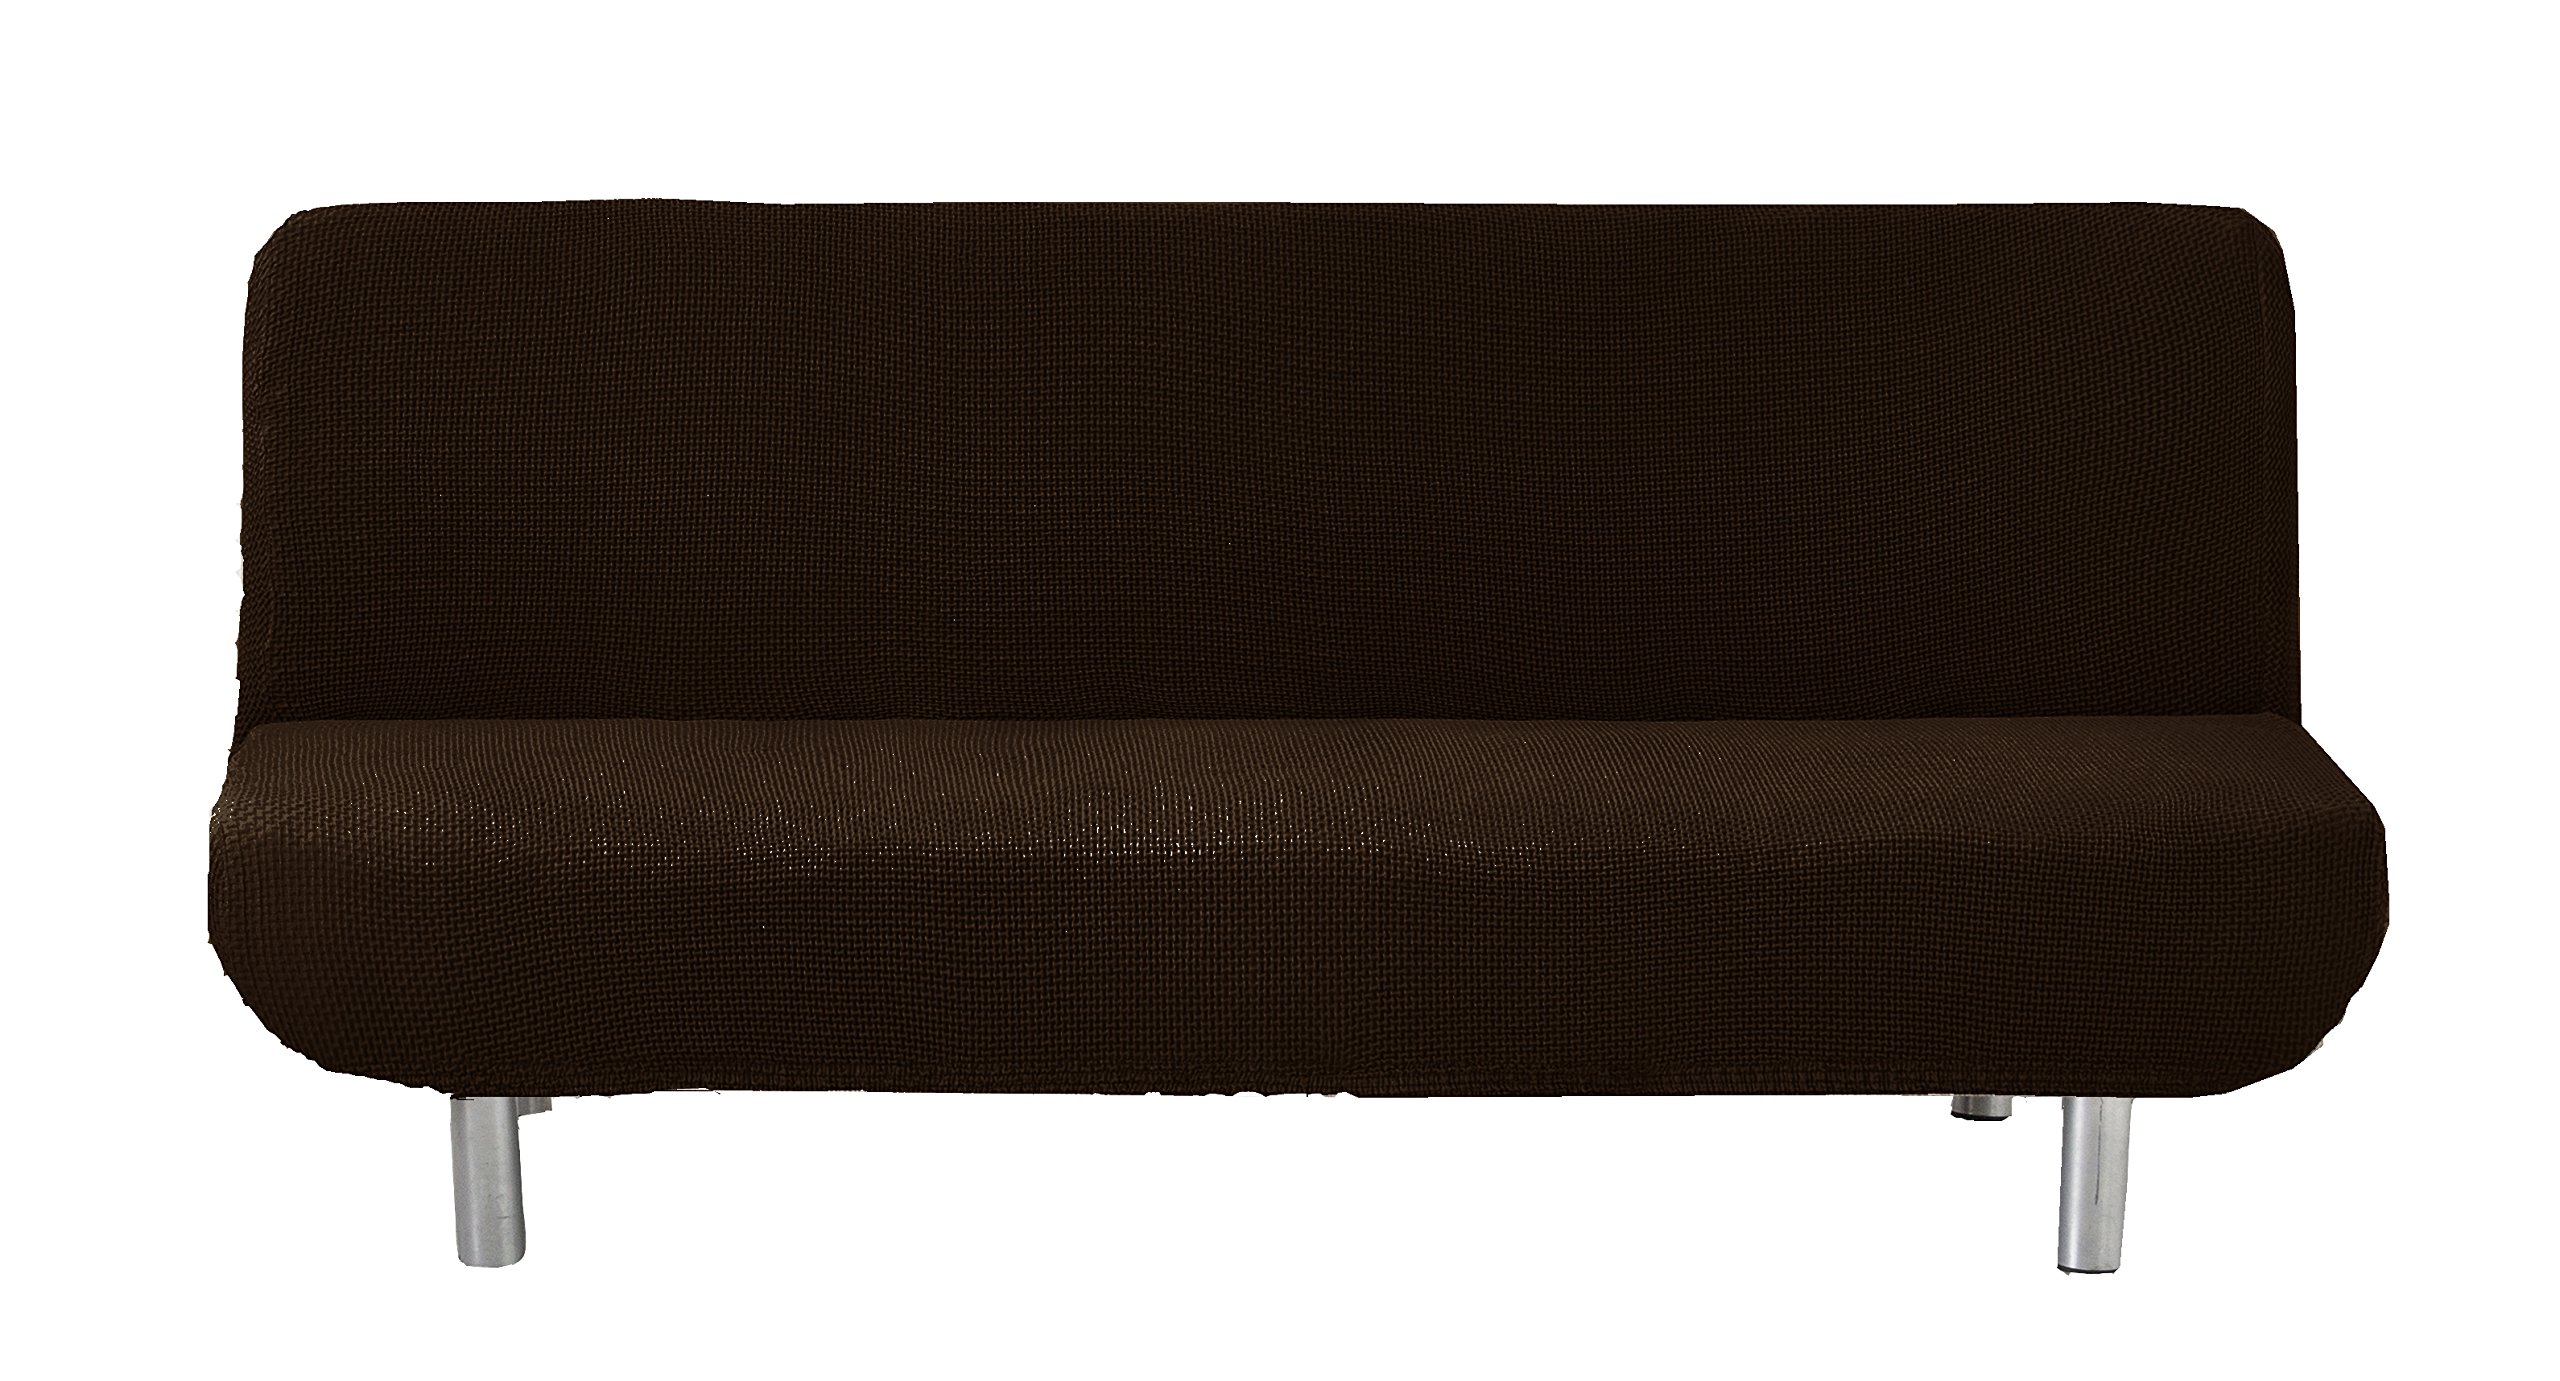 Eysa Cora bielastisch Sofa überwurf clic clac Farbe 07-braun, Polyester-Baumwolle, 36 x 27 x 14 cm